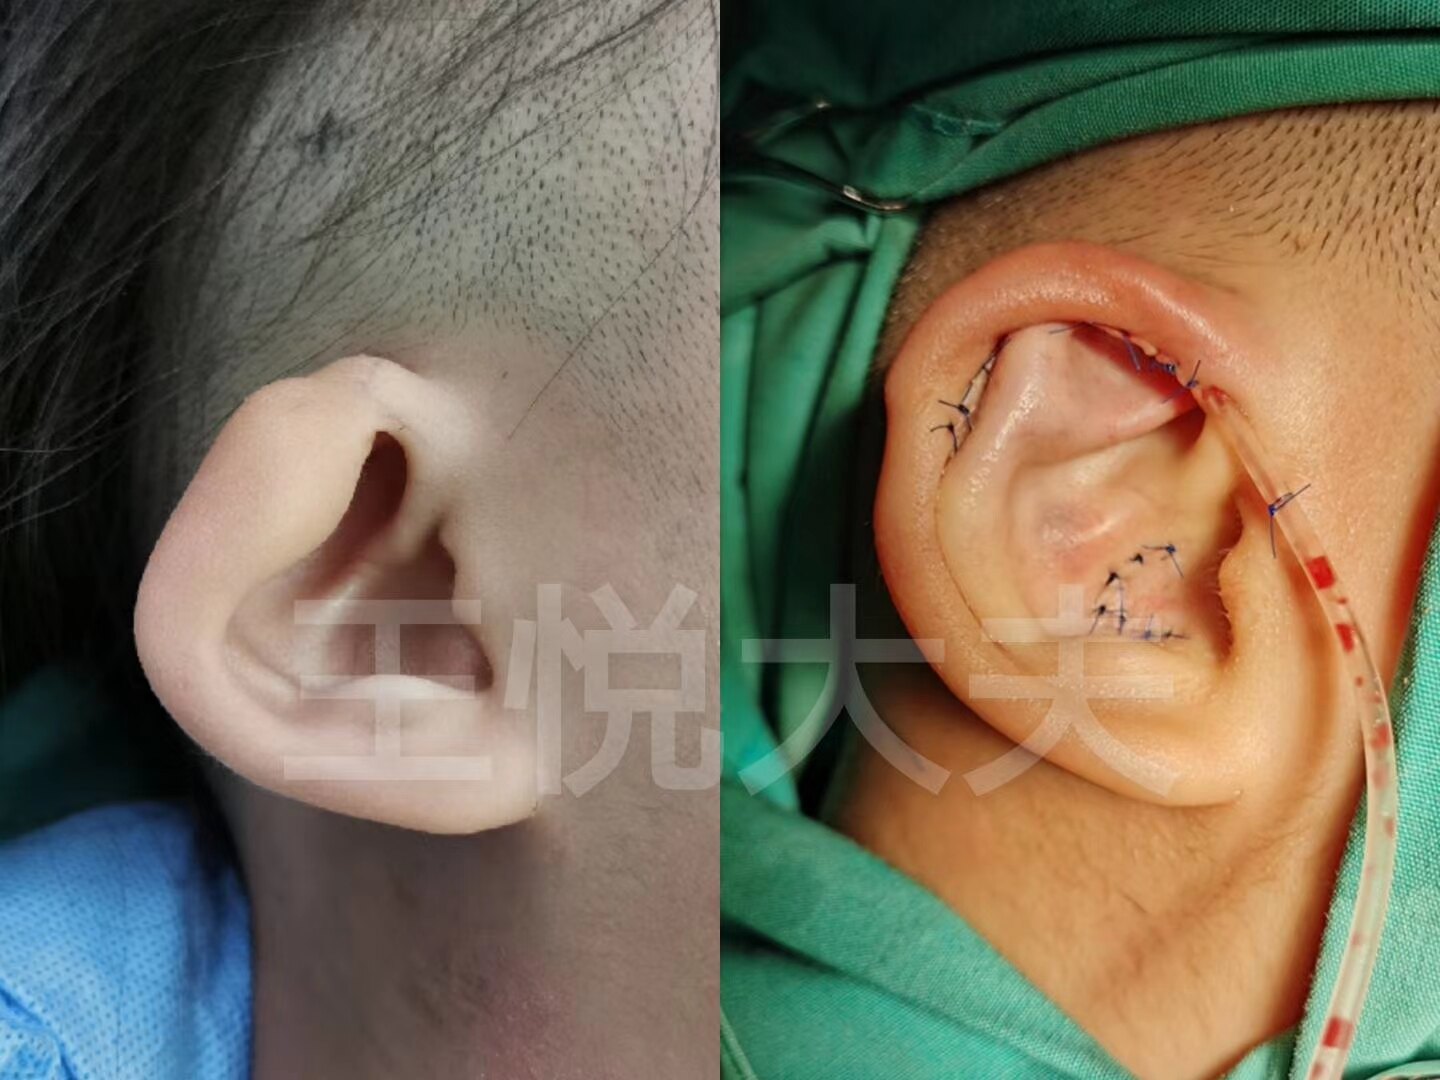 先天性耳朵畸形治疗图片